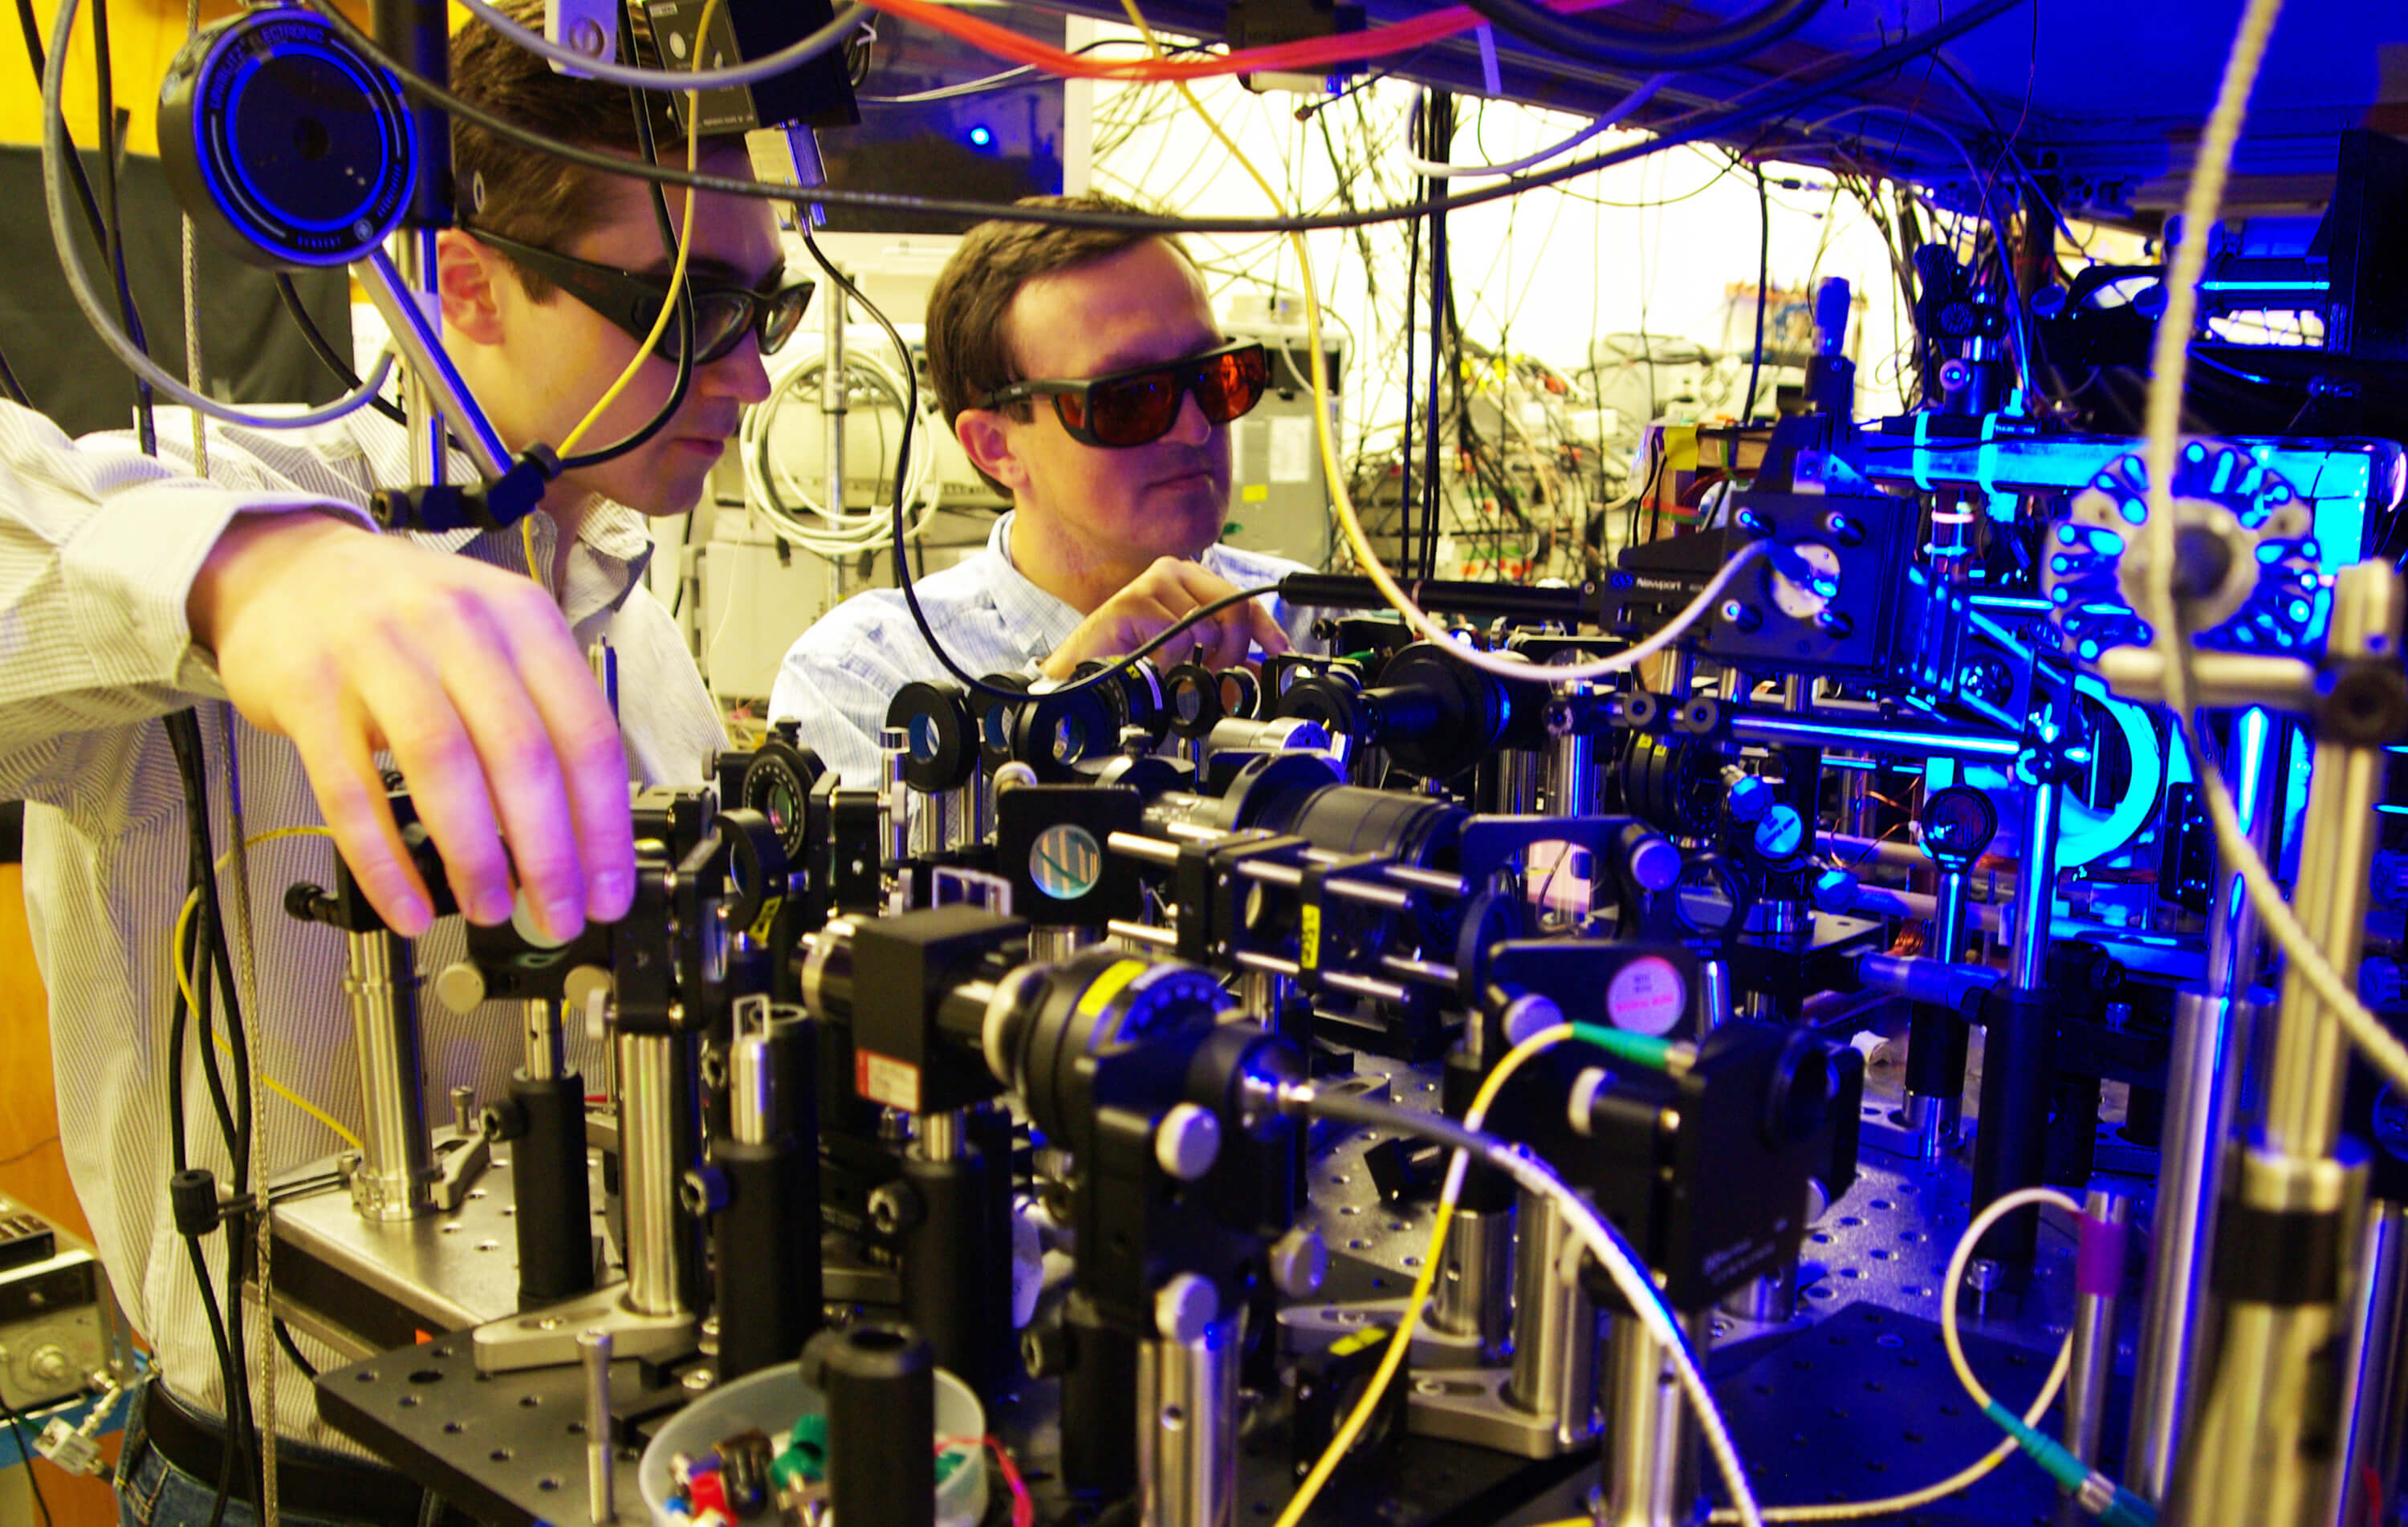 يقوم الباحثون في معهد جورجيا للتكنولوجيا بإعداد الروبيديوم لولاية ريدبيرج - لإطلاق الفوتونات للحوسبة الكمومية. الصورة: جامعة جورجيا للتكنولوجيا